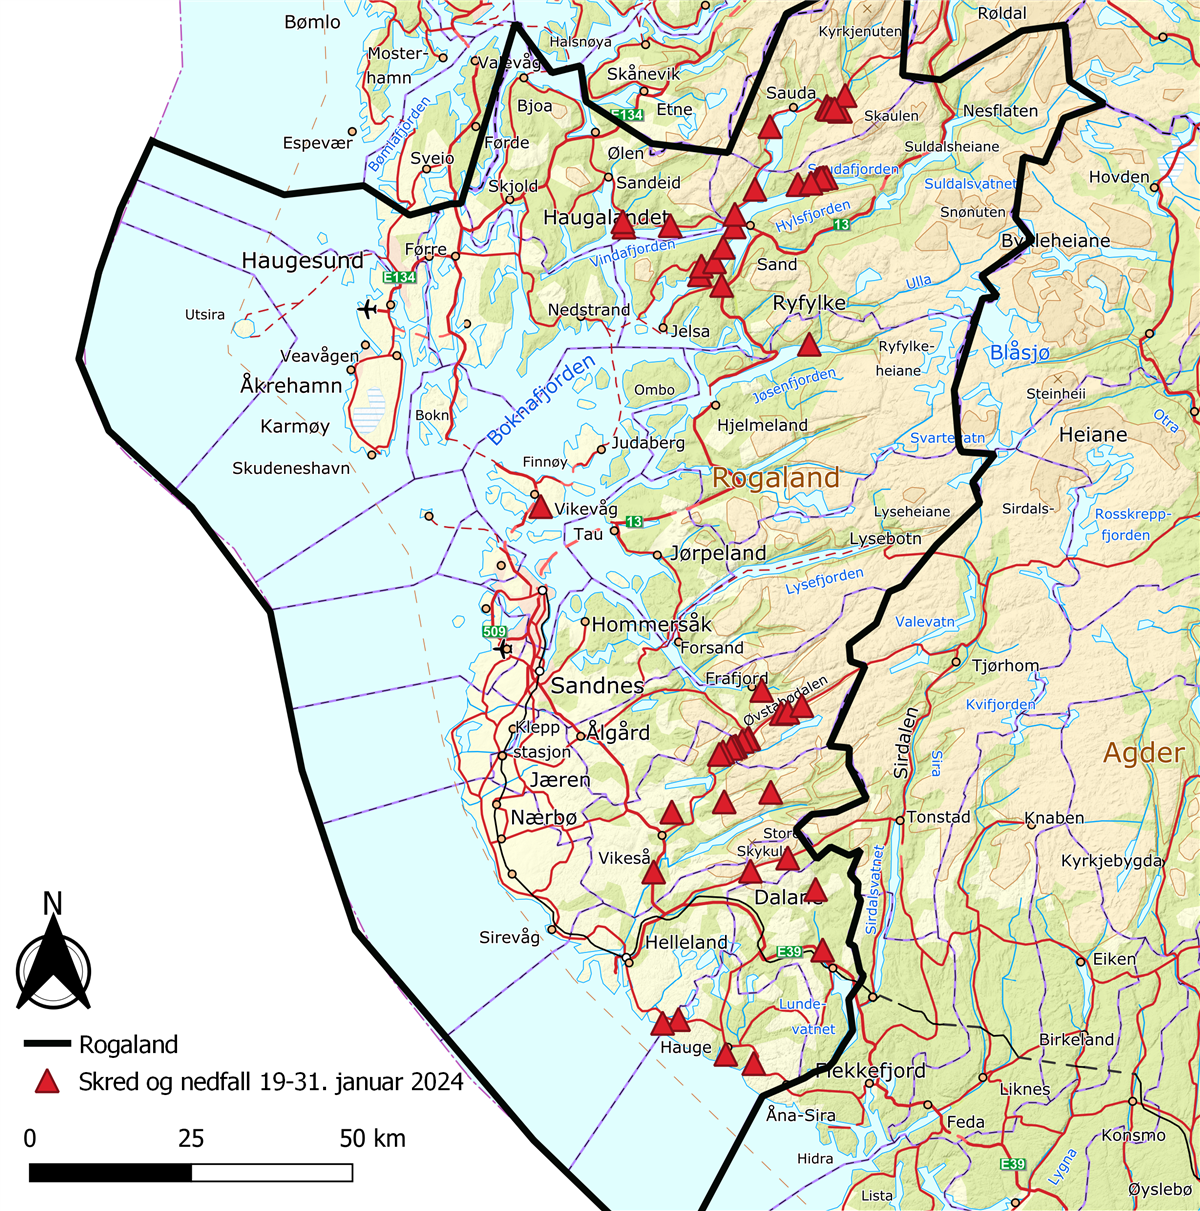 Kart som viser Rogaland med små røde trekanter der det har gått skred - Klikk for stort bilde